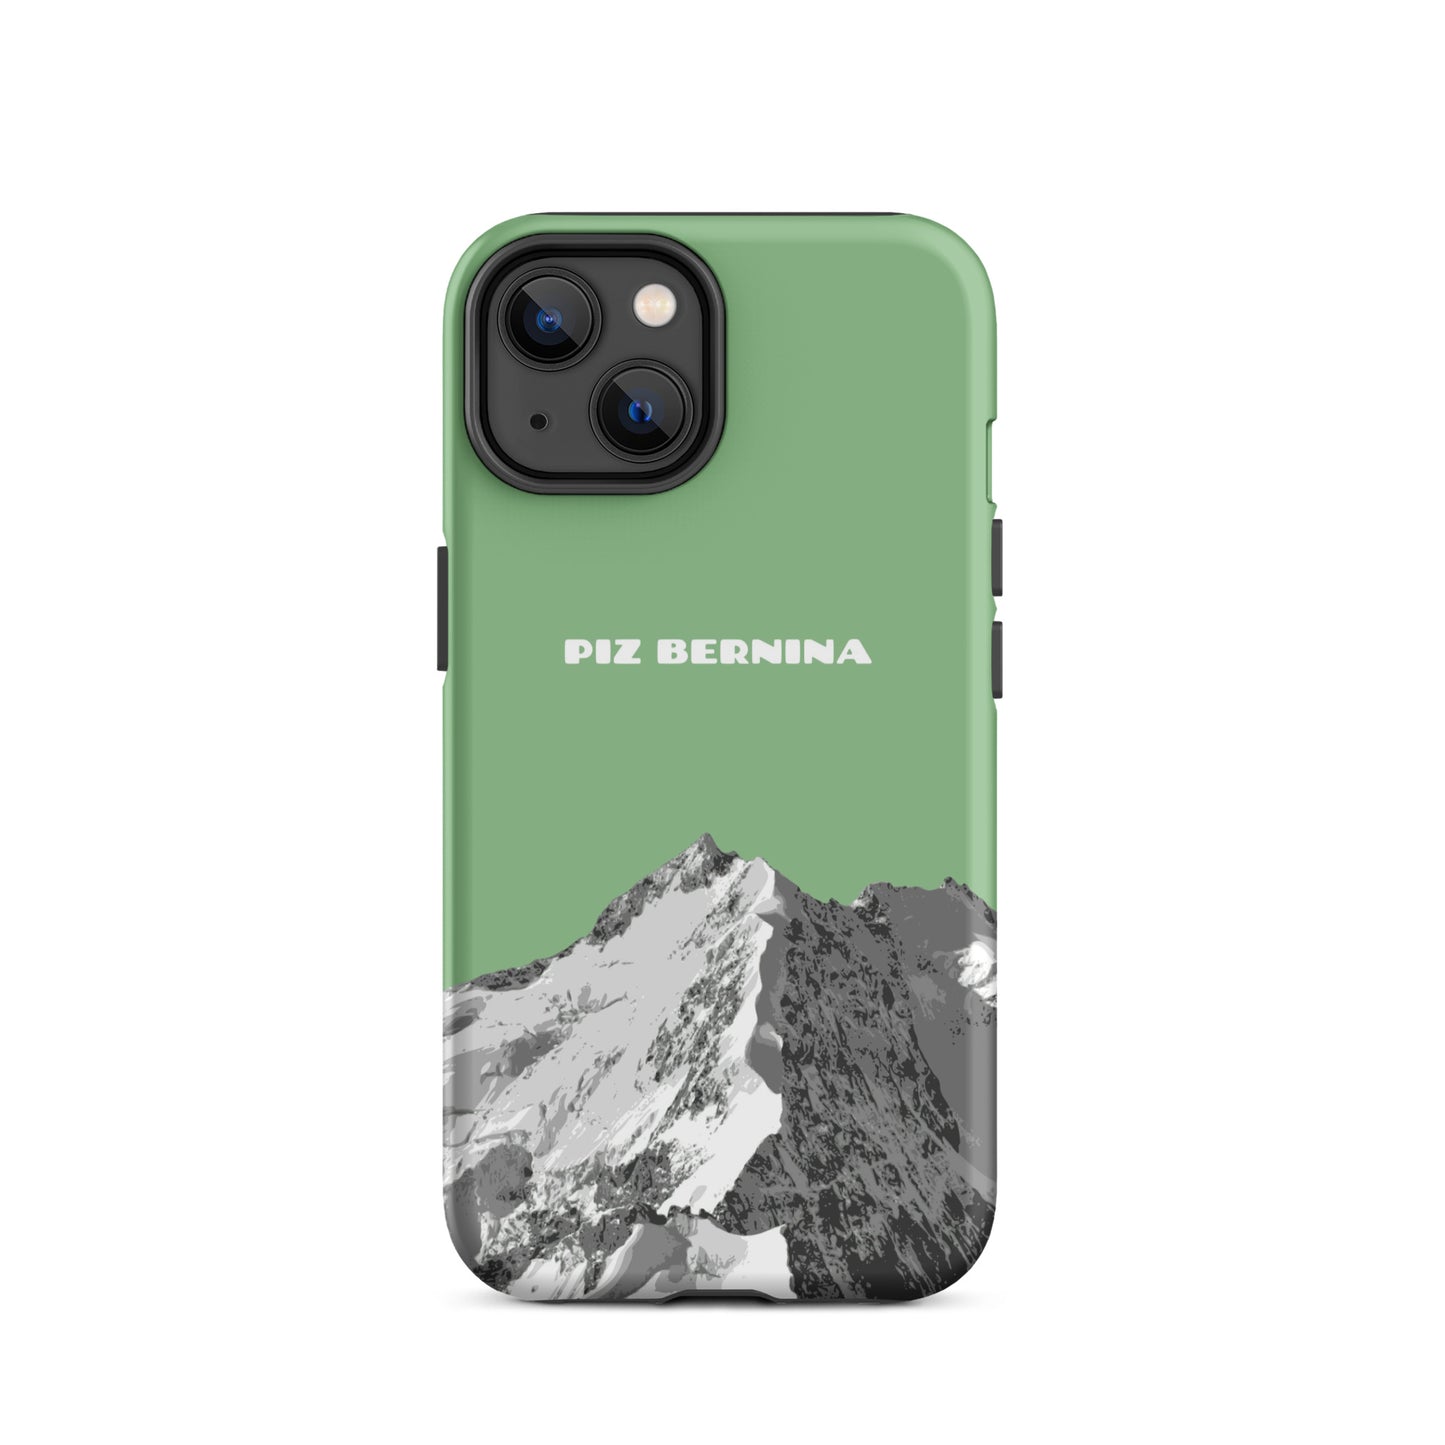 Hülle für das iPhone 14 von Apple in der Farbe Hellgrün, dass den Piz Bernina in Graubünden zeigt.